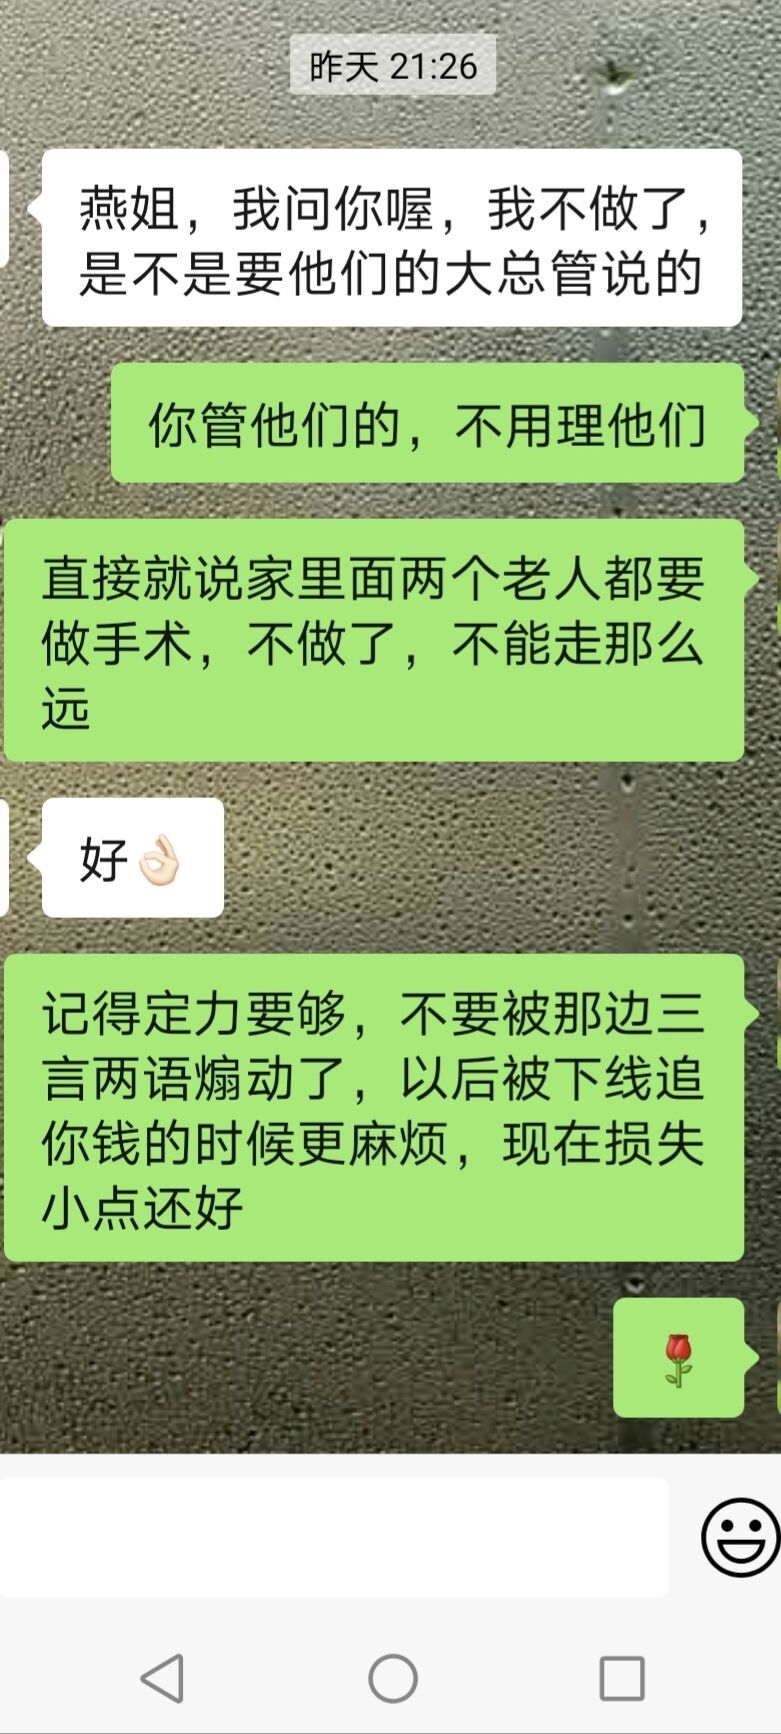 【反传销过程】广东劝说南宁连锁经营受害者案例